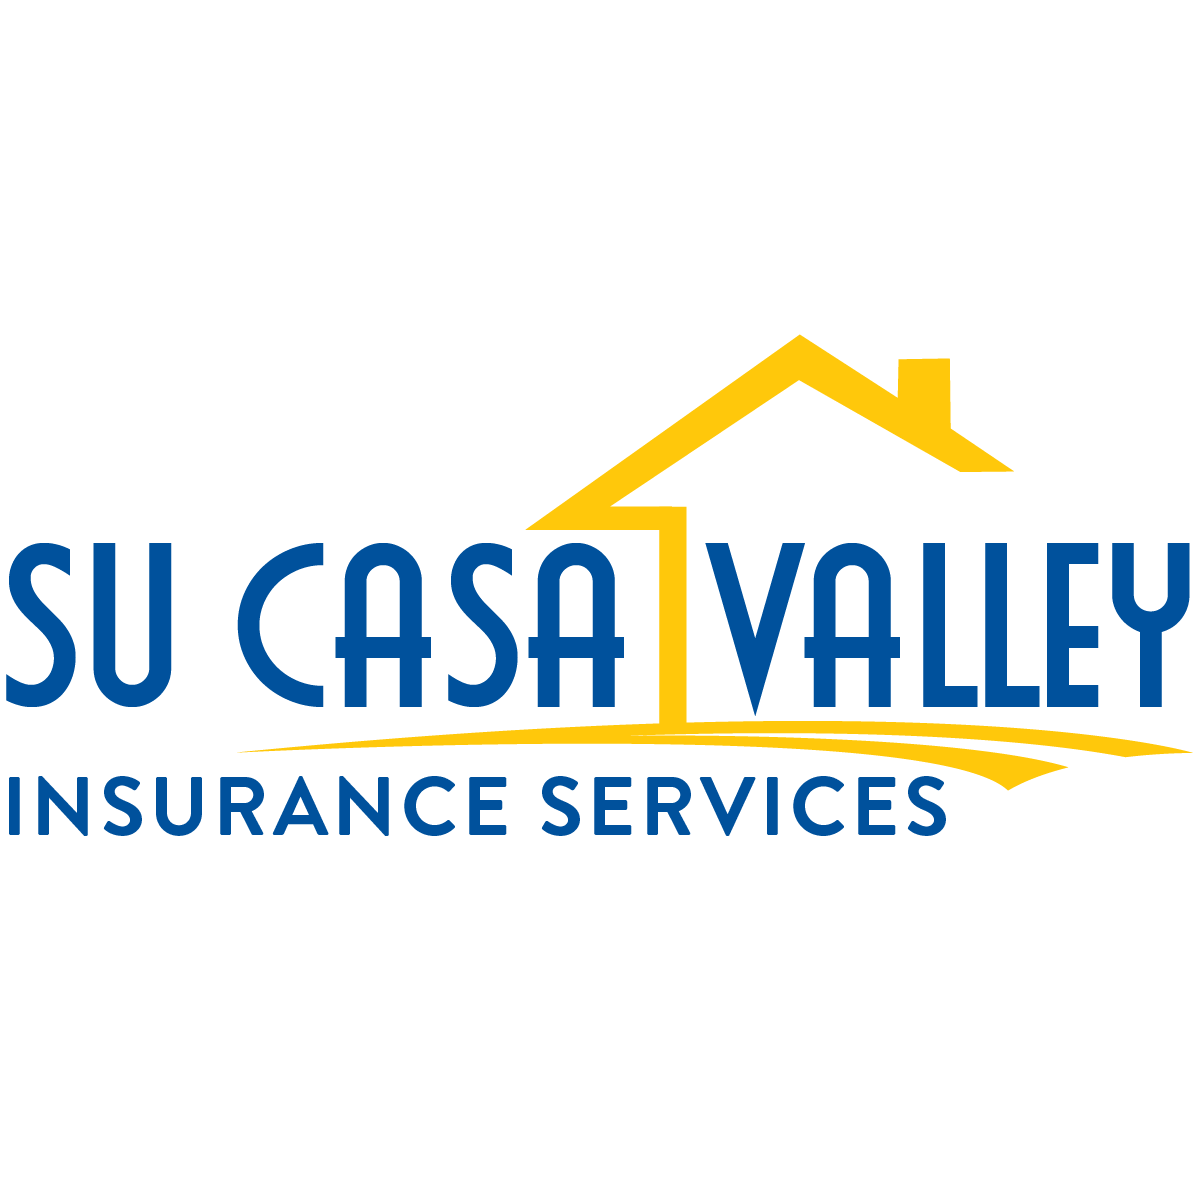 Su Casa Valley Insurance Services - Tulare, CA 93274 - (559)328-5999 | ShowMeLocal.com